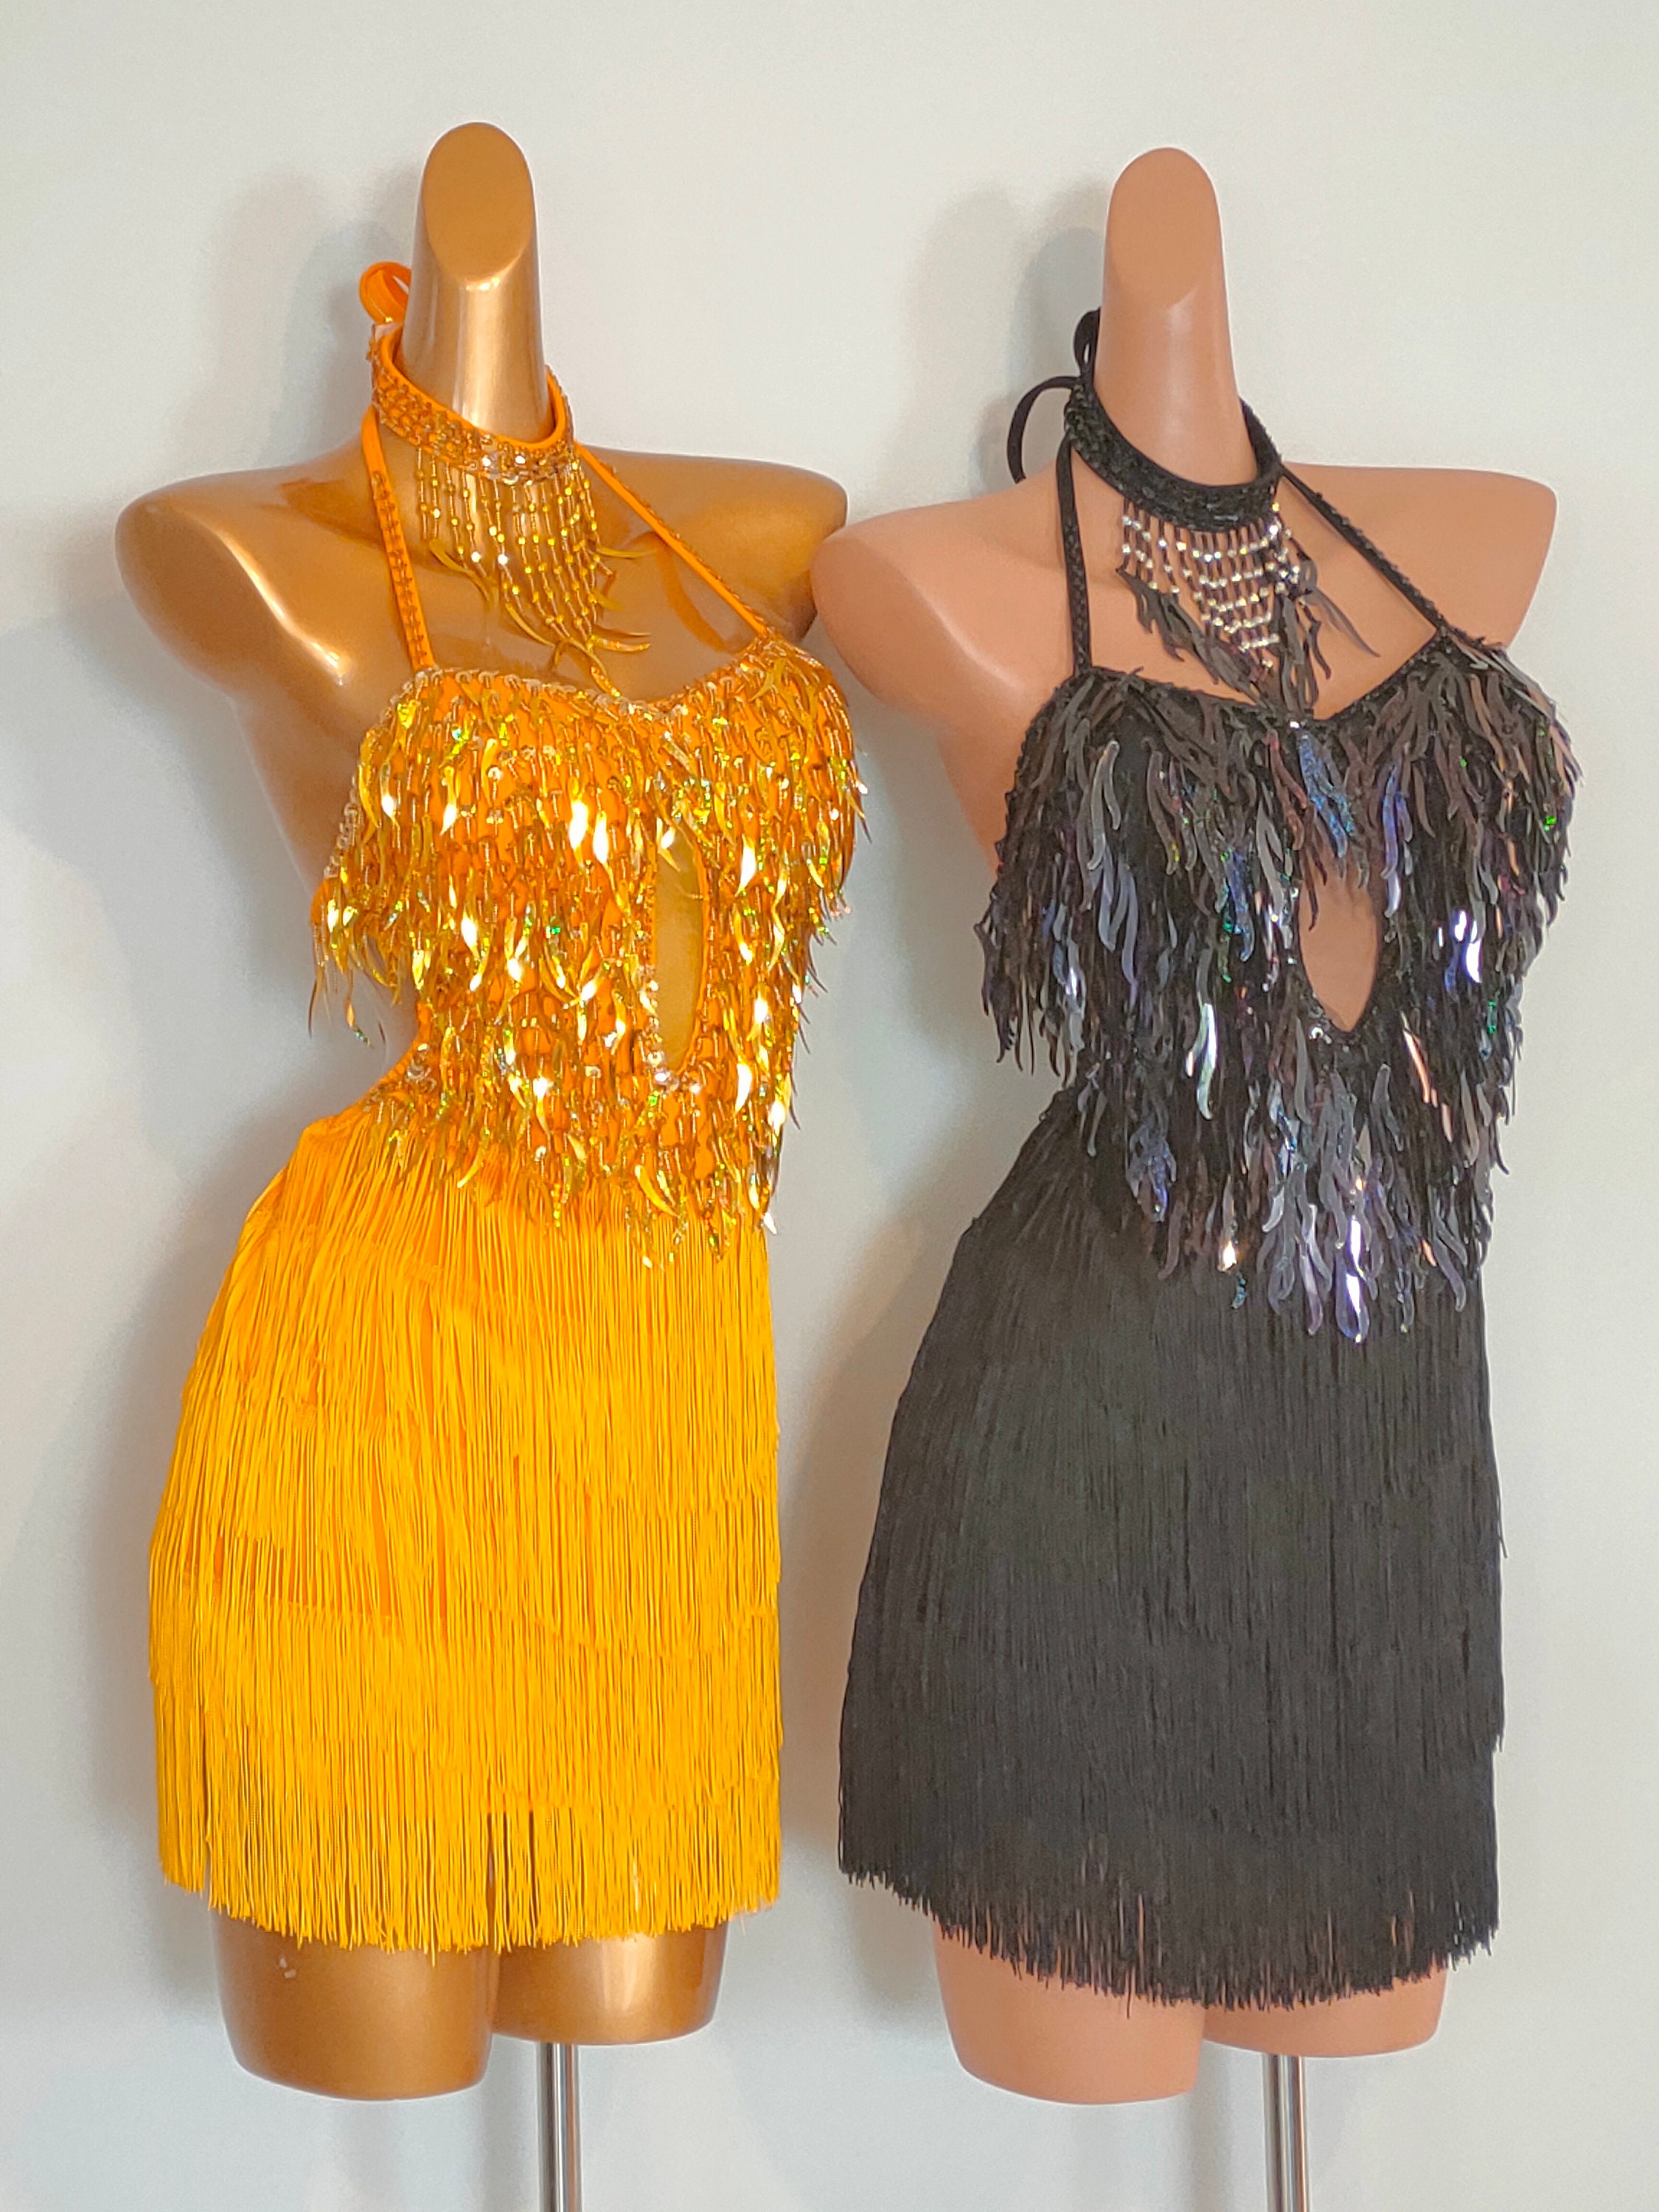 GOLD Beads Fringe Dress-samba Costumes Carnival Show Girl Las - Etsy UK